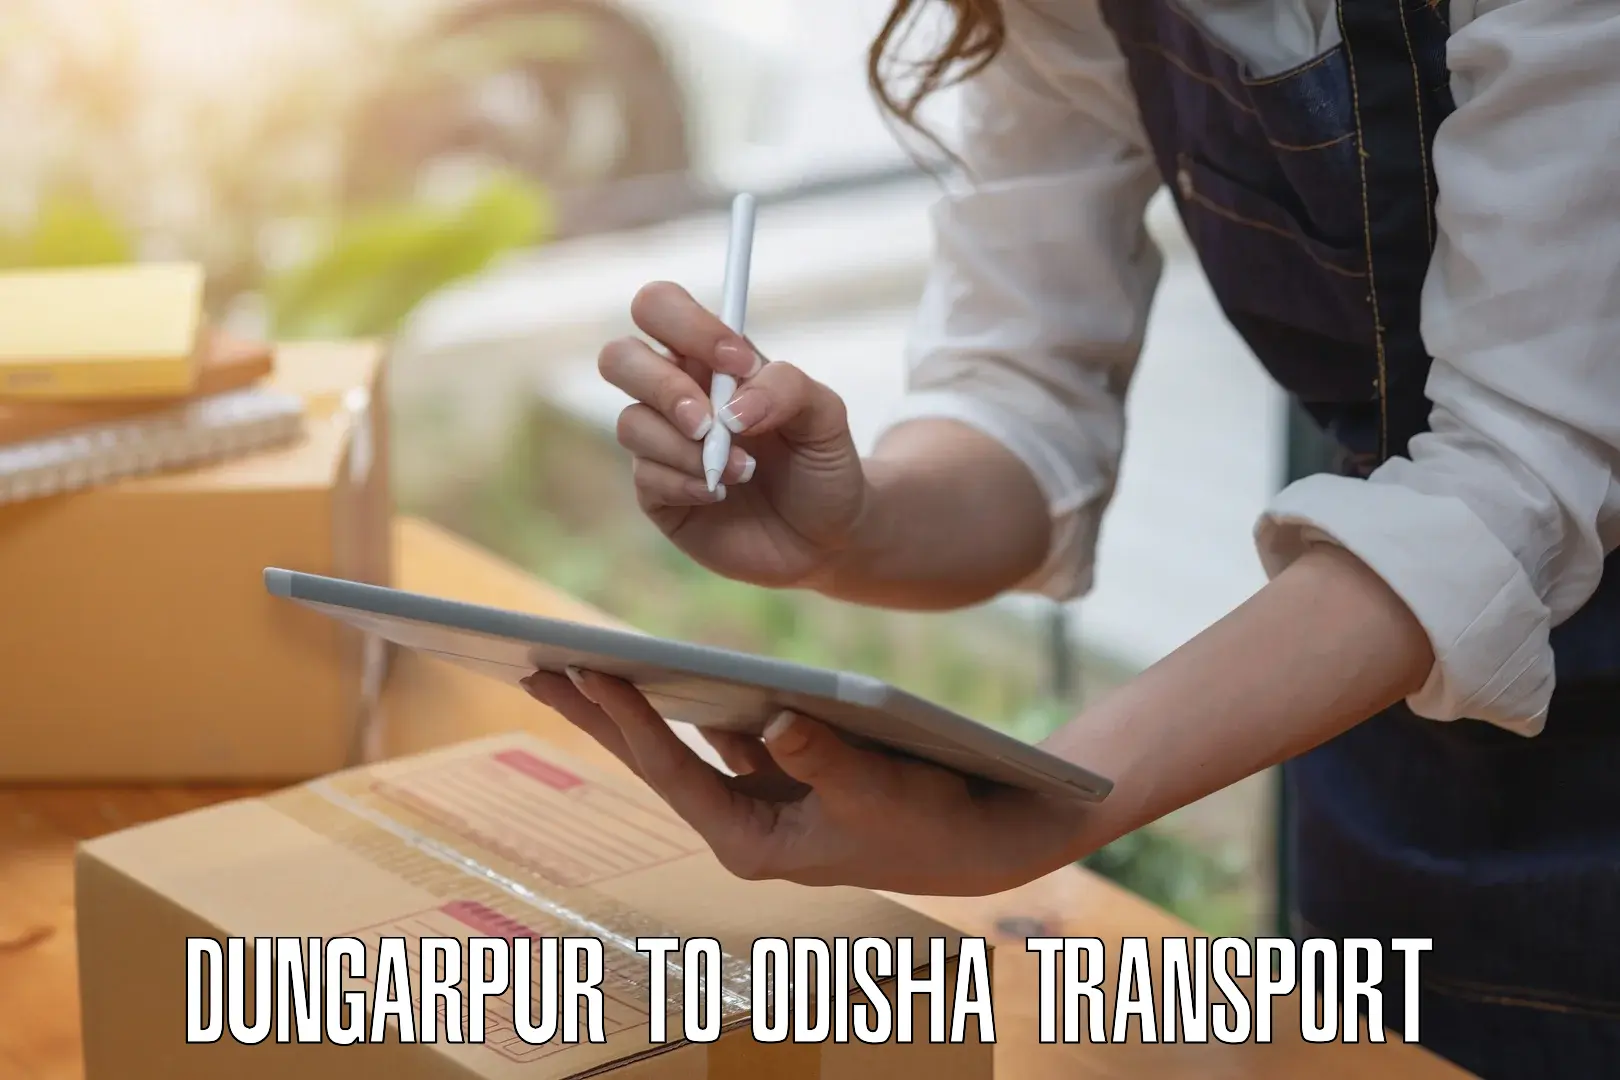 Daily transport service in Dungarpur to Siksha O Anusandhan Bhubaneswar